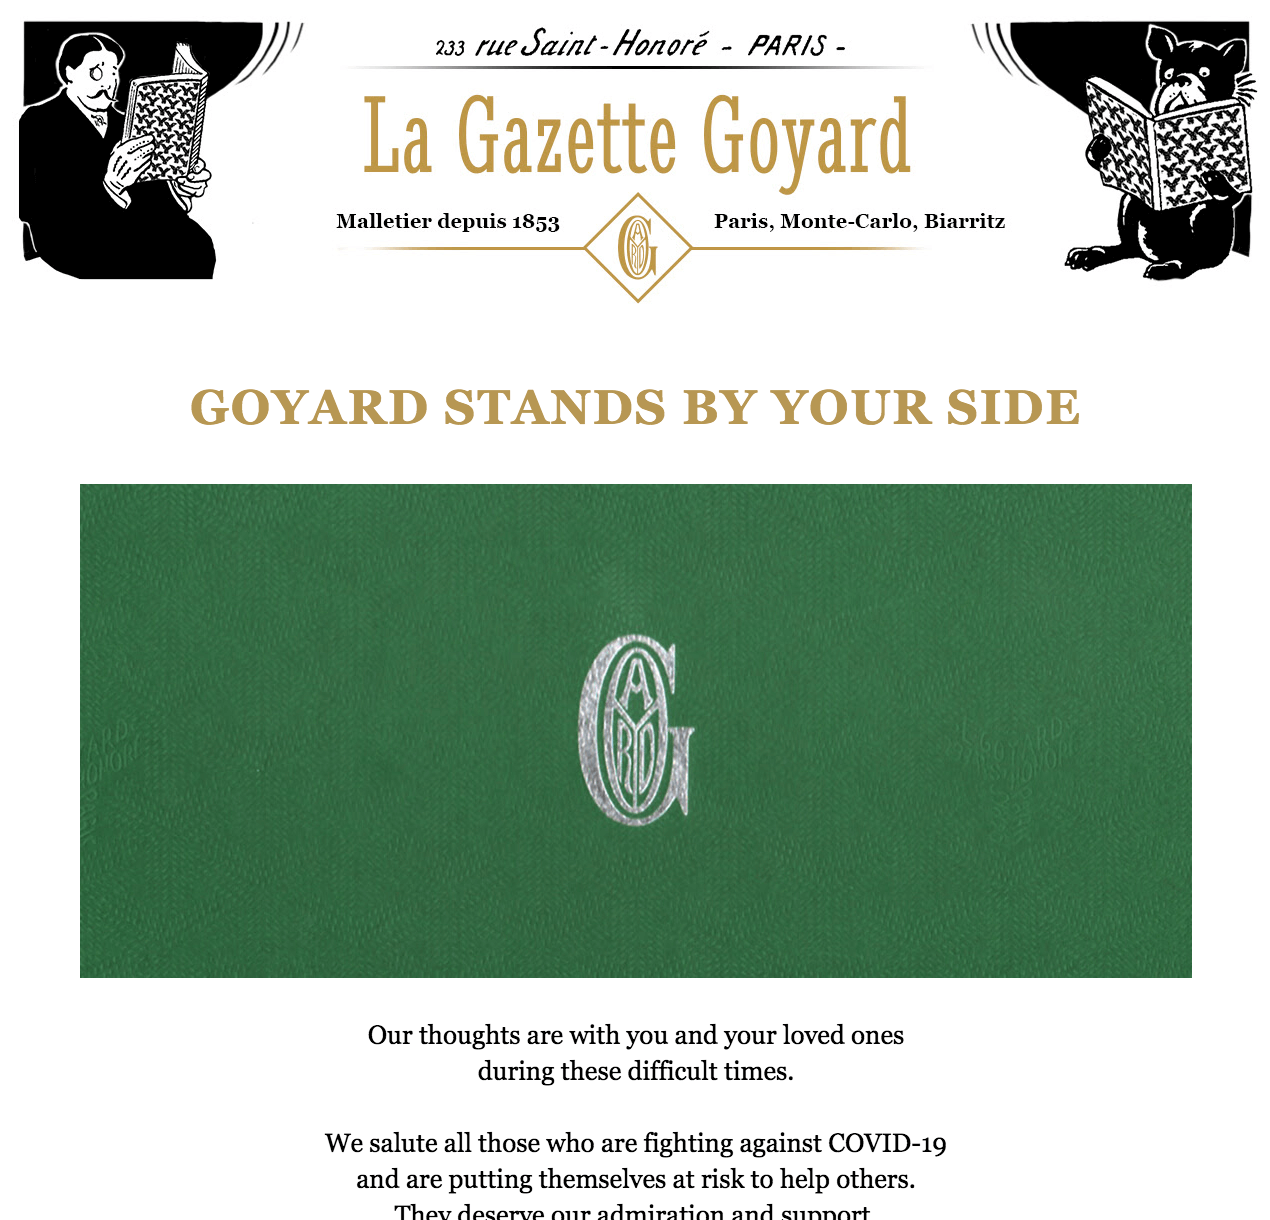 La Gazette Goyard